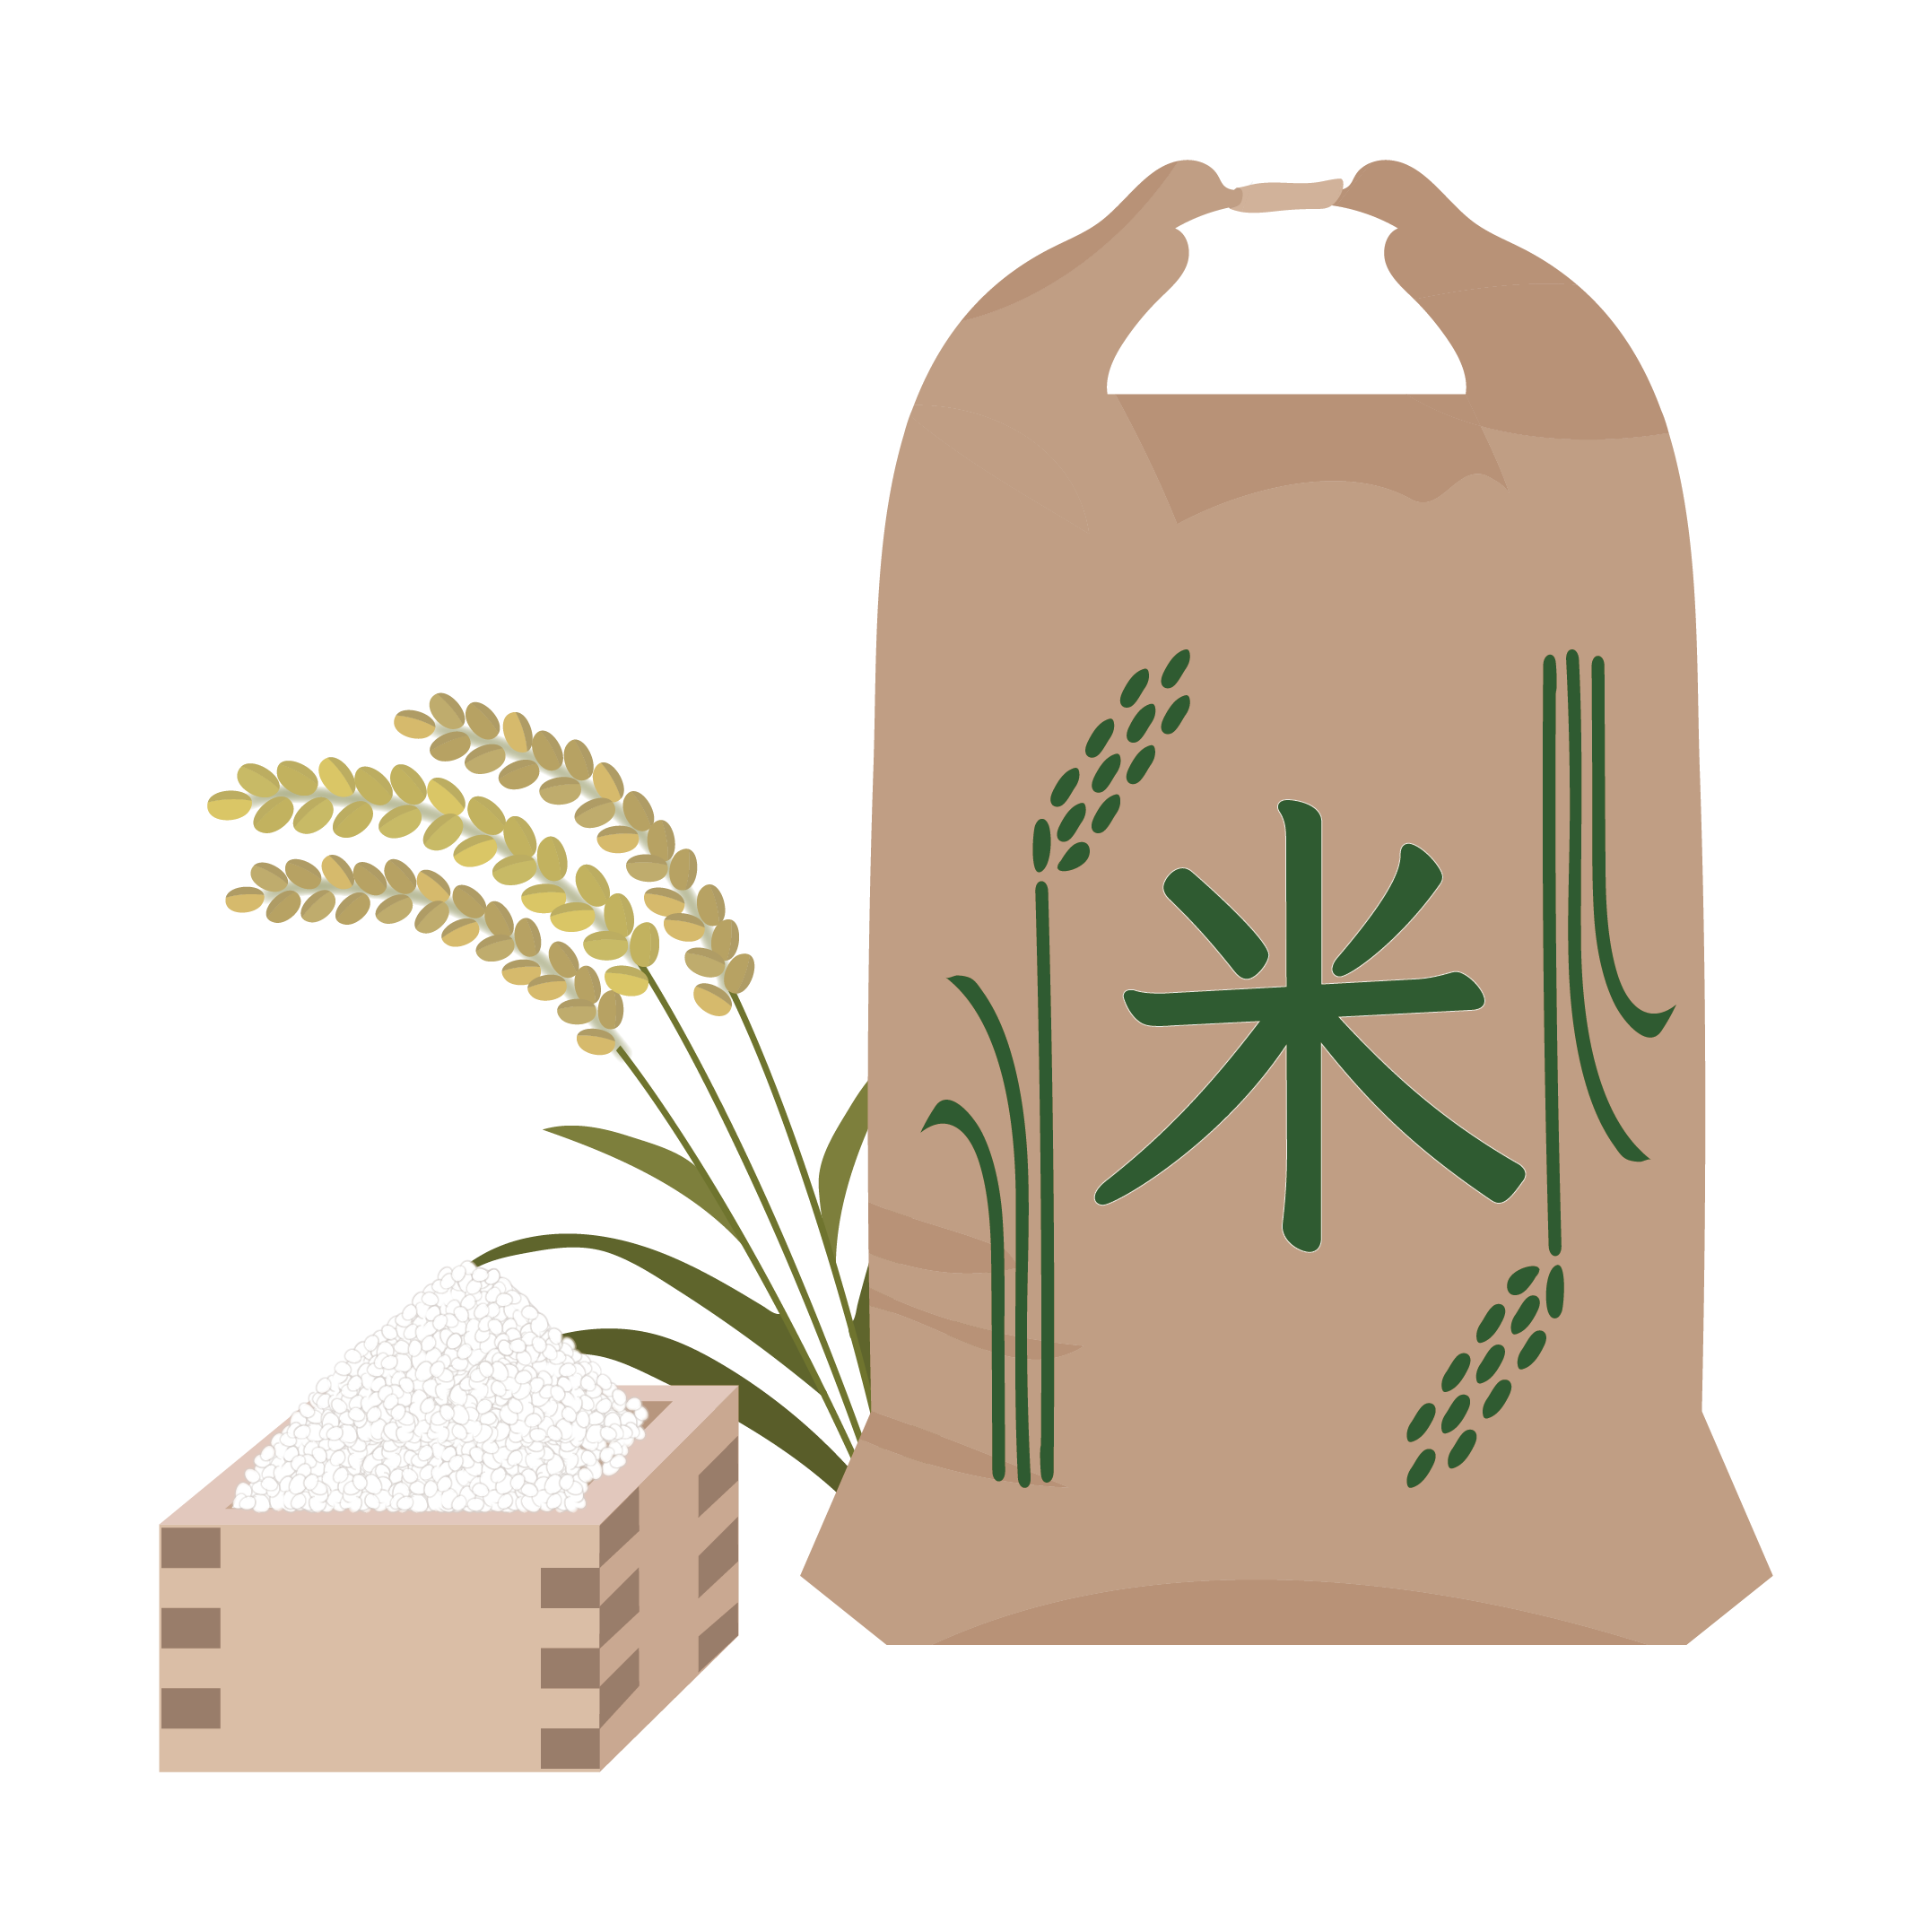 米 イラスト 稲に米袋♪ | 商用フリー(無料)のイラスト素材なら「イラストマンション」